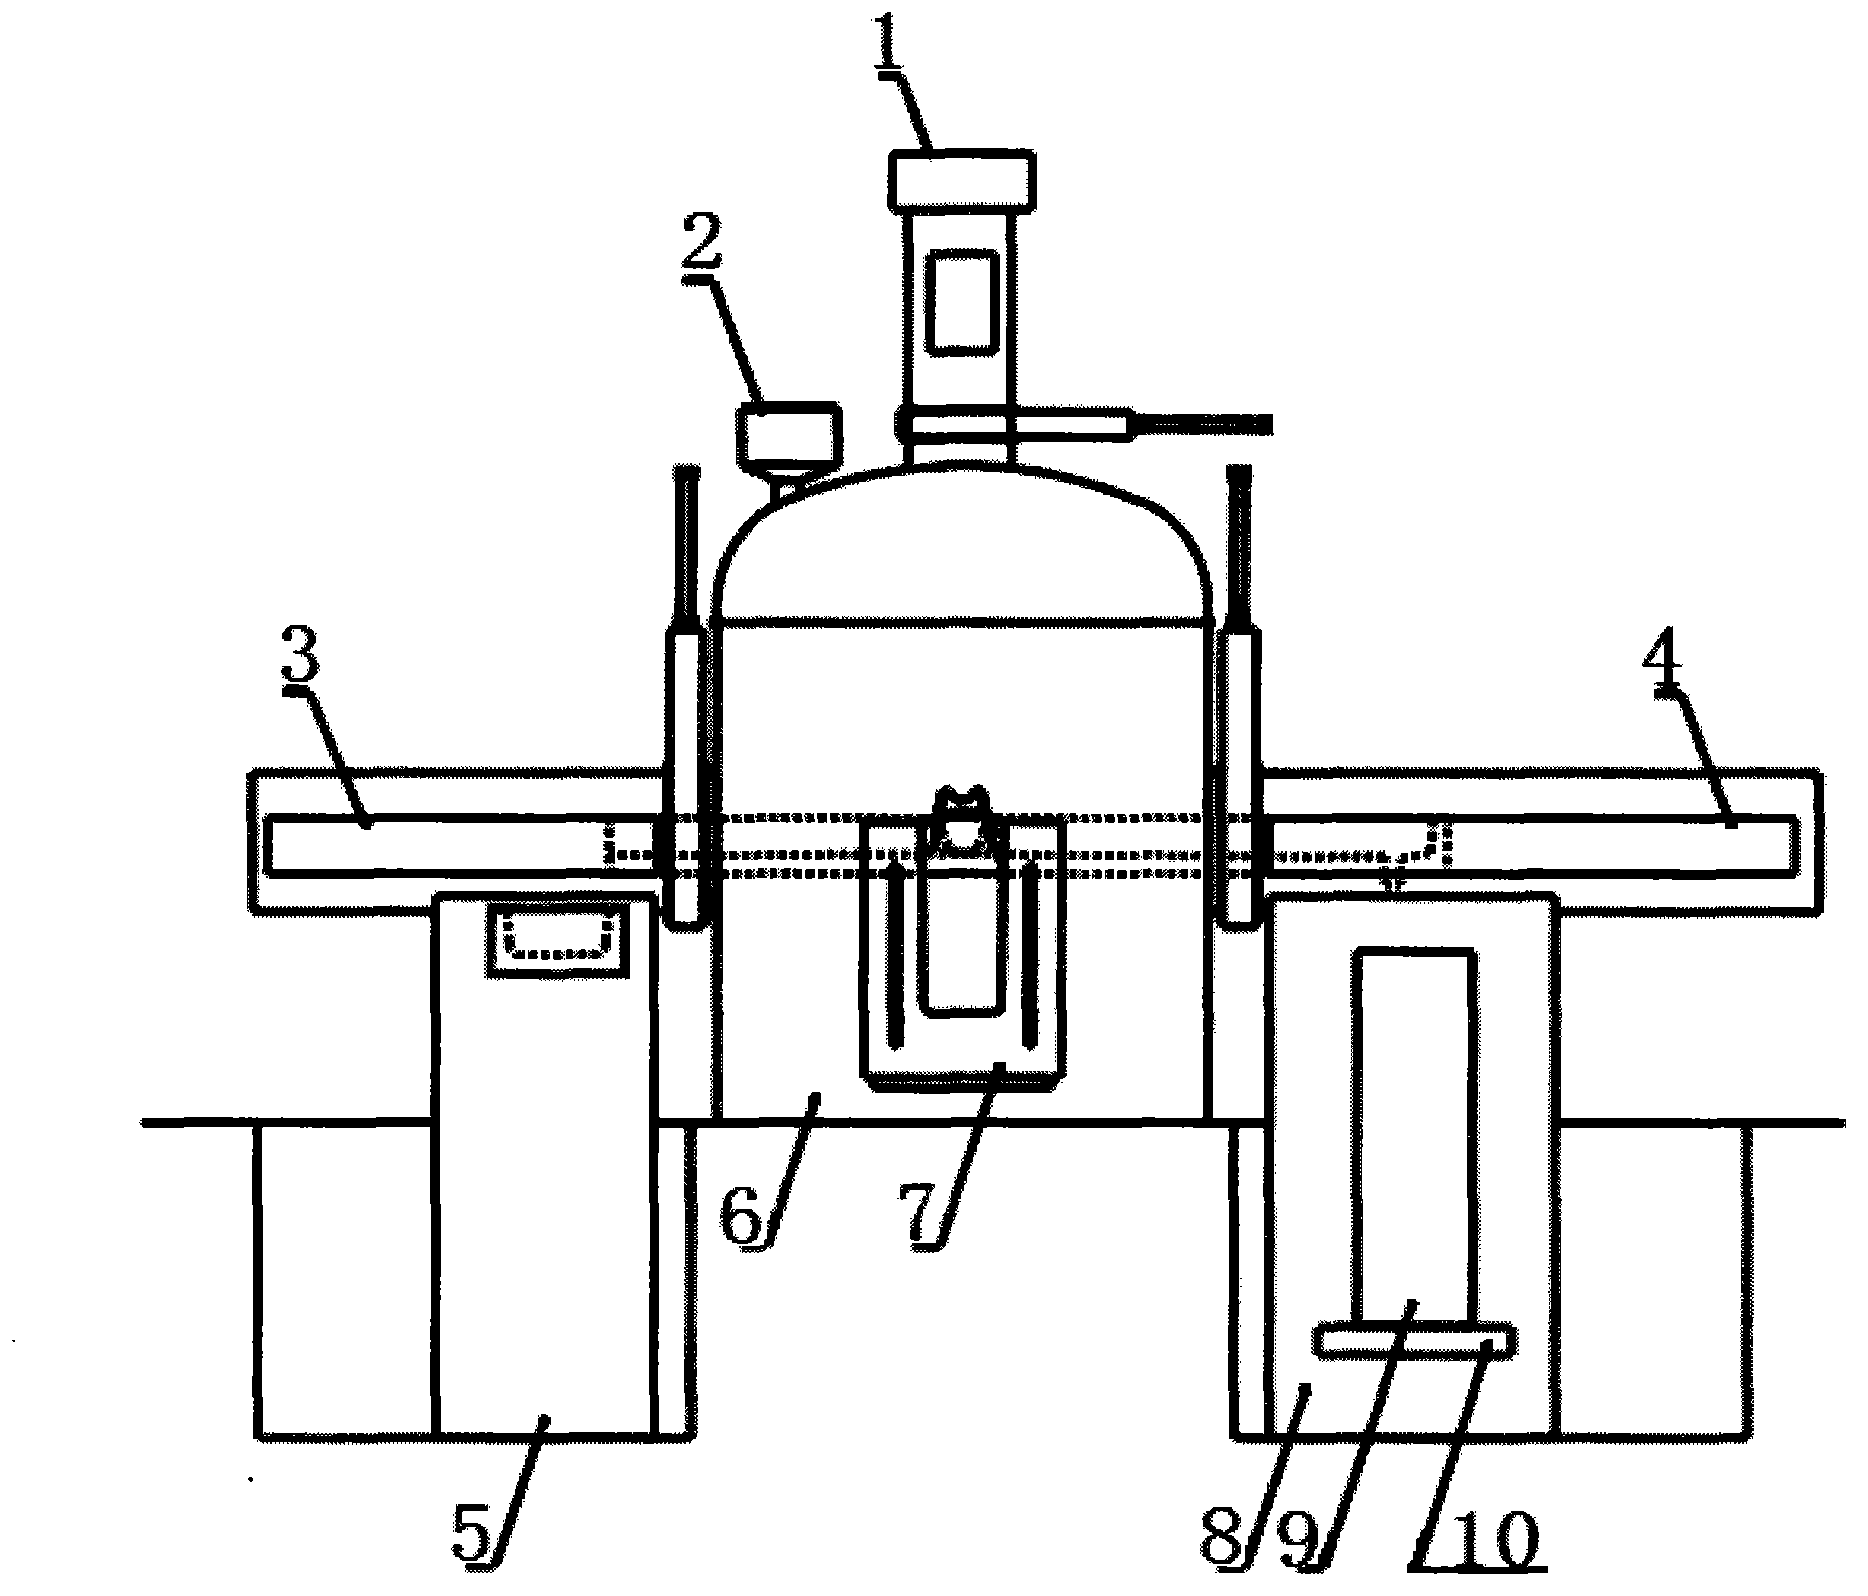 Multipurpose semicontinuous vacuum induction casting furnace